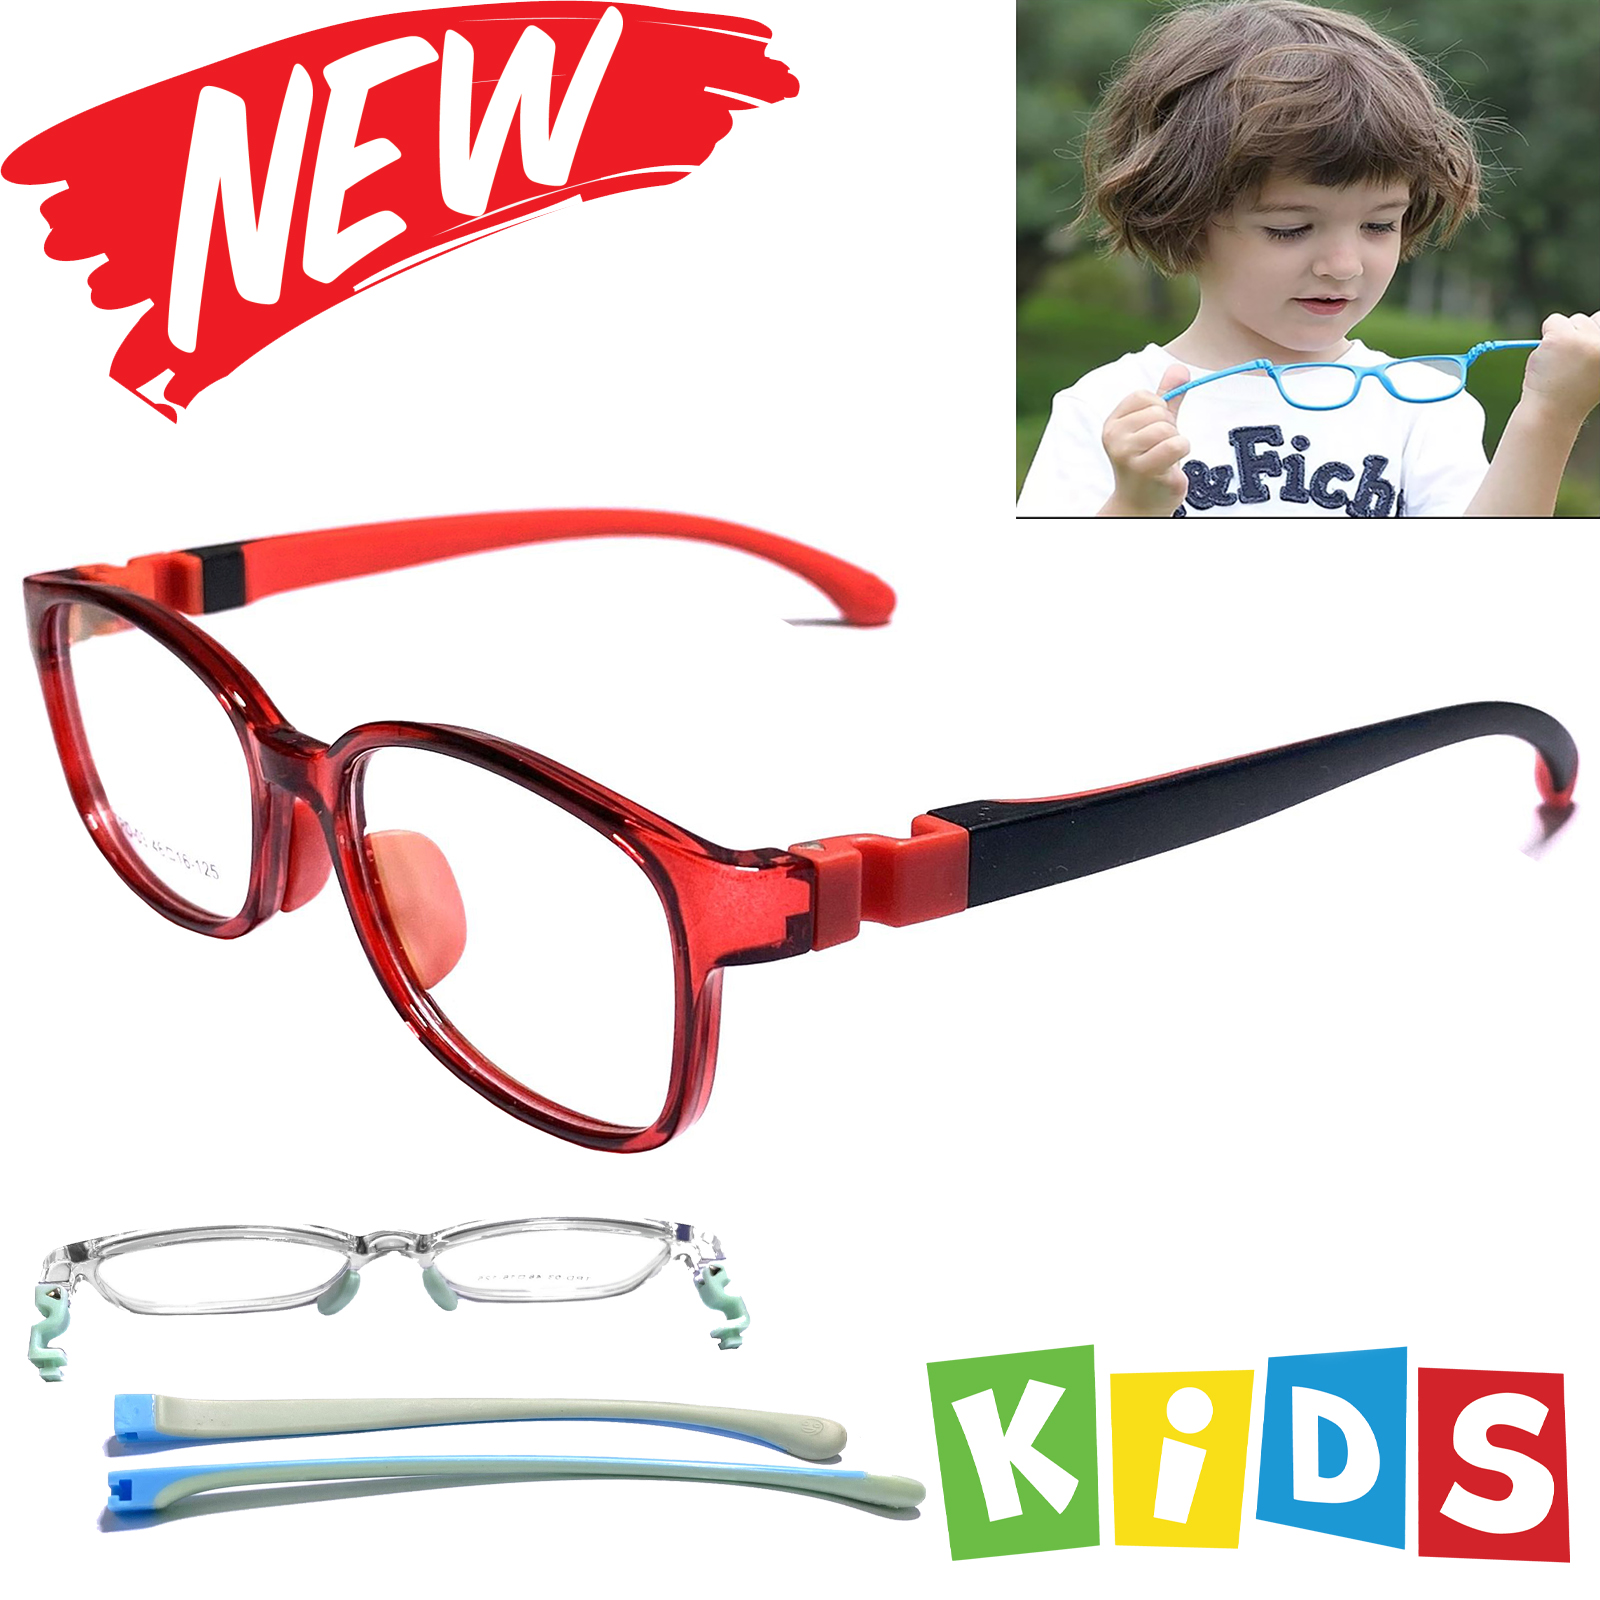 แว่นตาเด็ก  กรองแสงสีฟ้า blue block แว่นเด็ก บลูบล็อค รุ่นTRD-03 ขาข้อต่อยืดหยุ่น ถอดขาเปลี่ยนได้ วัสดุTR90เบาสวมไส่สบาย